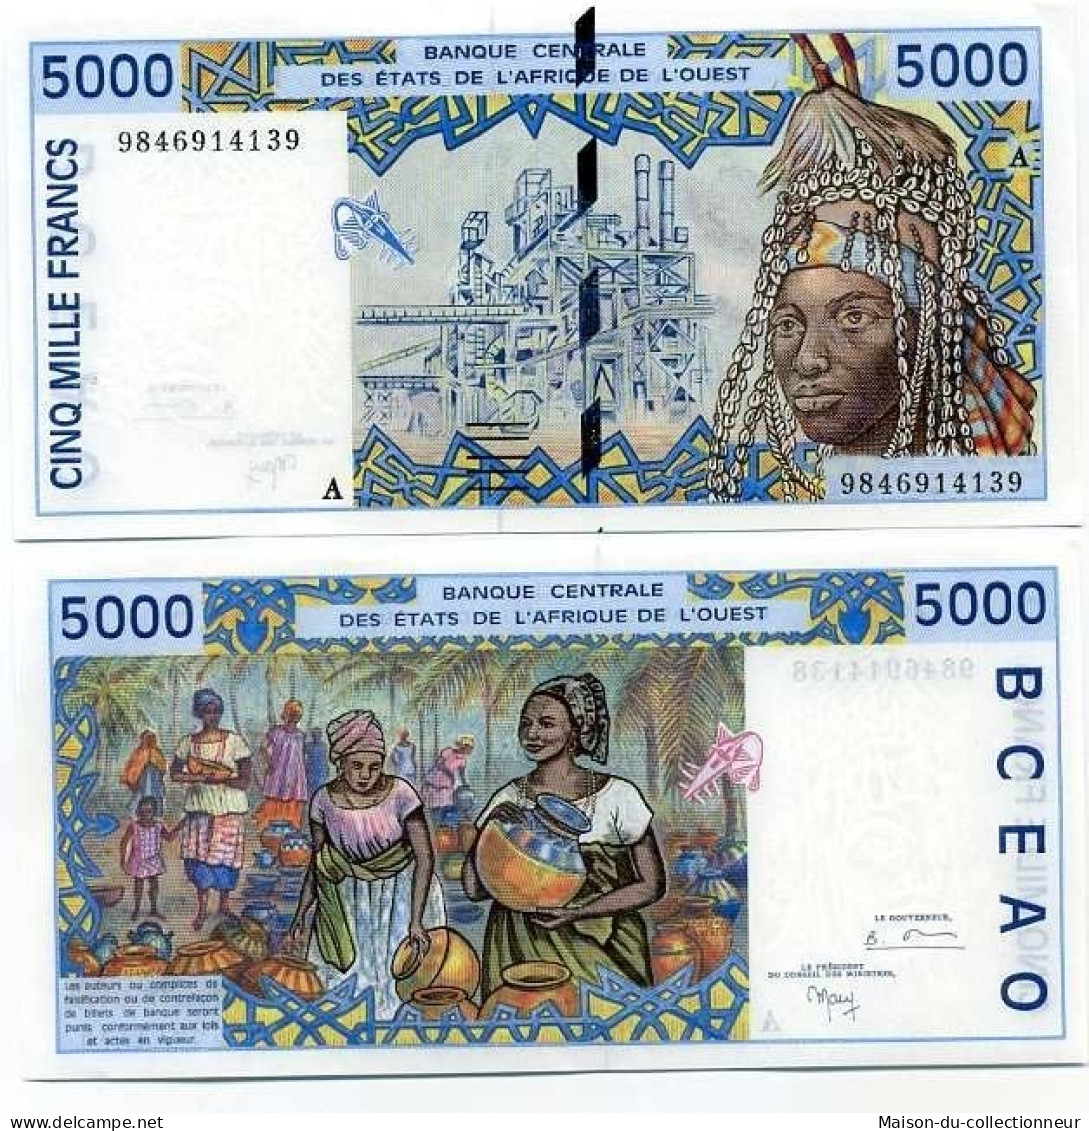 Billet De Collection Afrique De L'ouest Cote D'ivoire Pk N° 113 - 5000 Francs - Elfenbeinküste (Côte D'Ivoire)